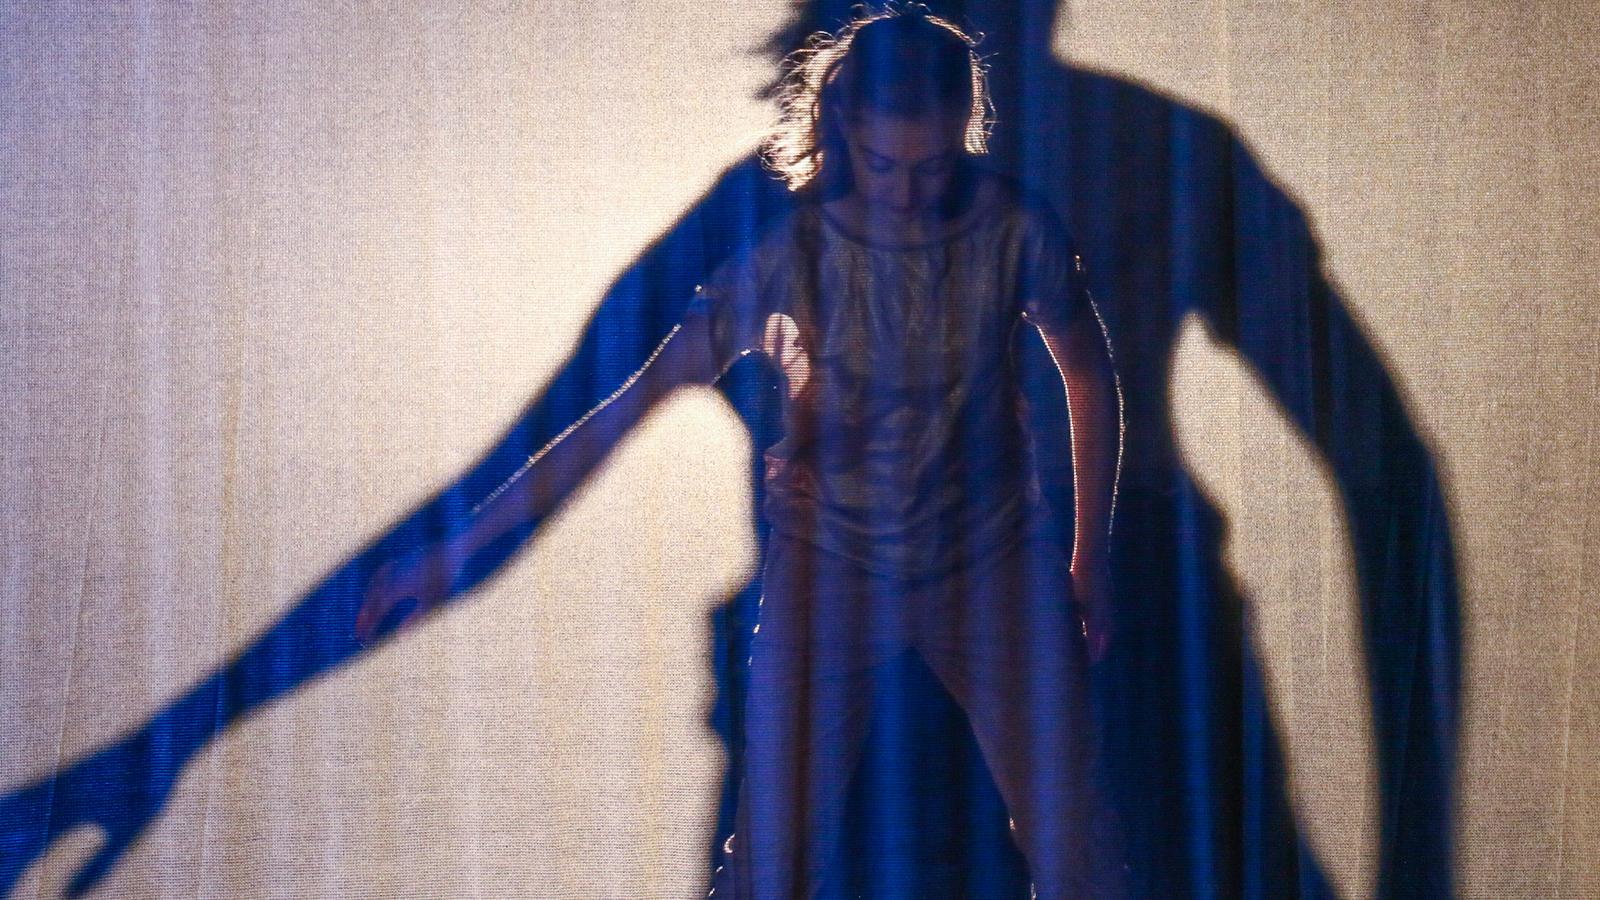 Dancer performing behind scrim